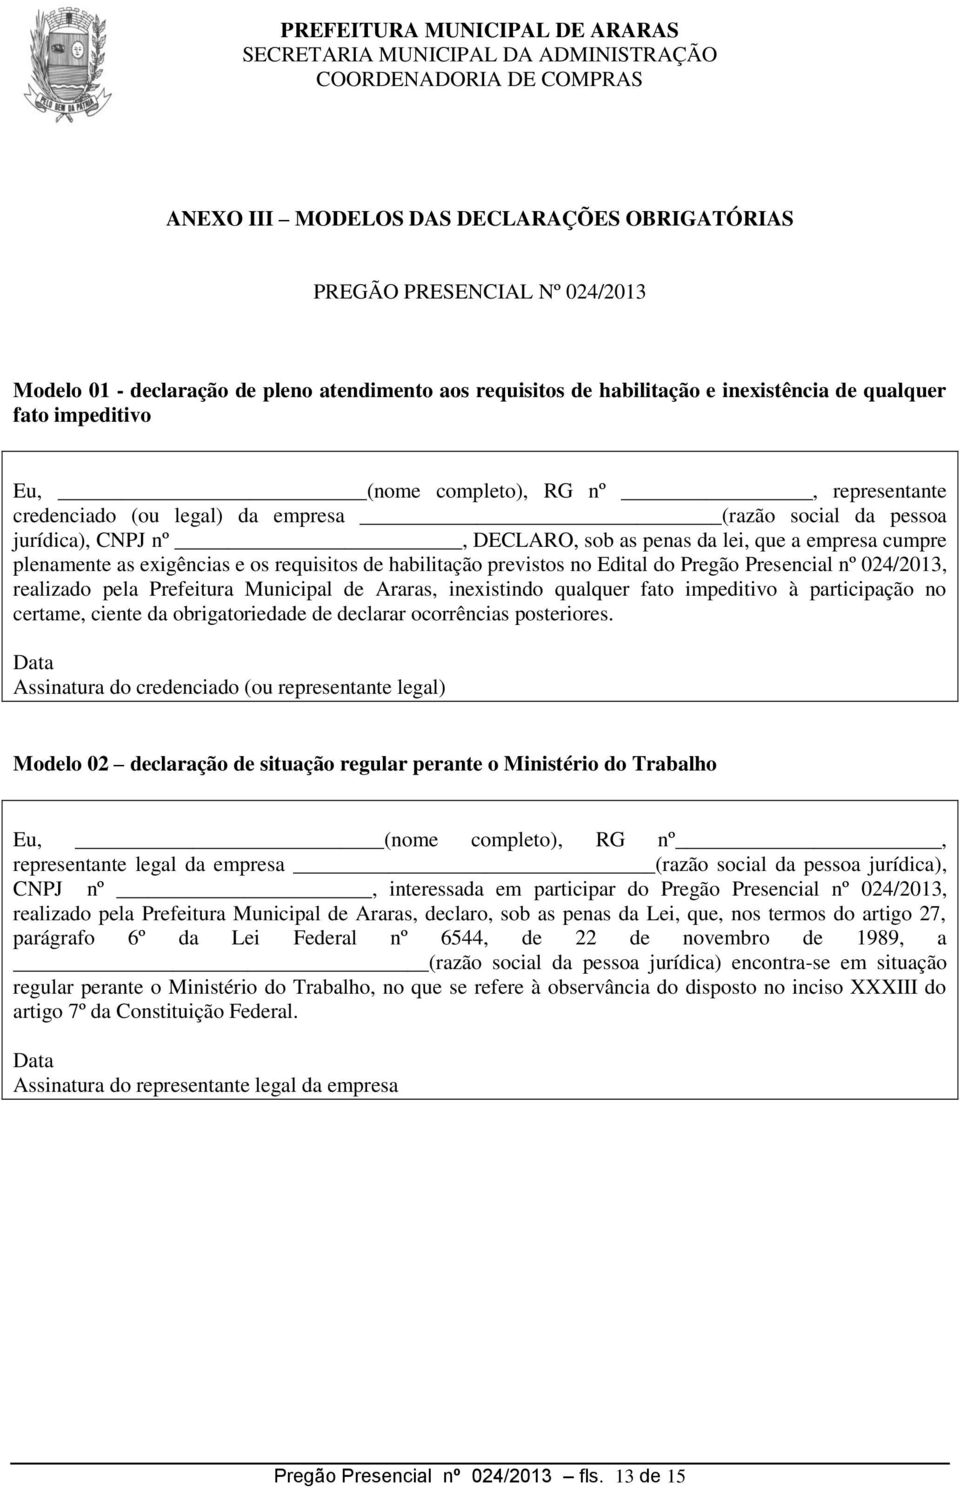 requisitos de habilitação previstos no Edital do Pregão Presencial nº 024/2013, realizado pela Prefeitura Municipal de Araras, inexistindo qualquer fato impeditivo à participação no certame, ciente